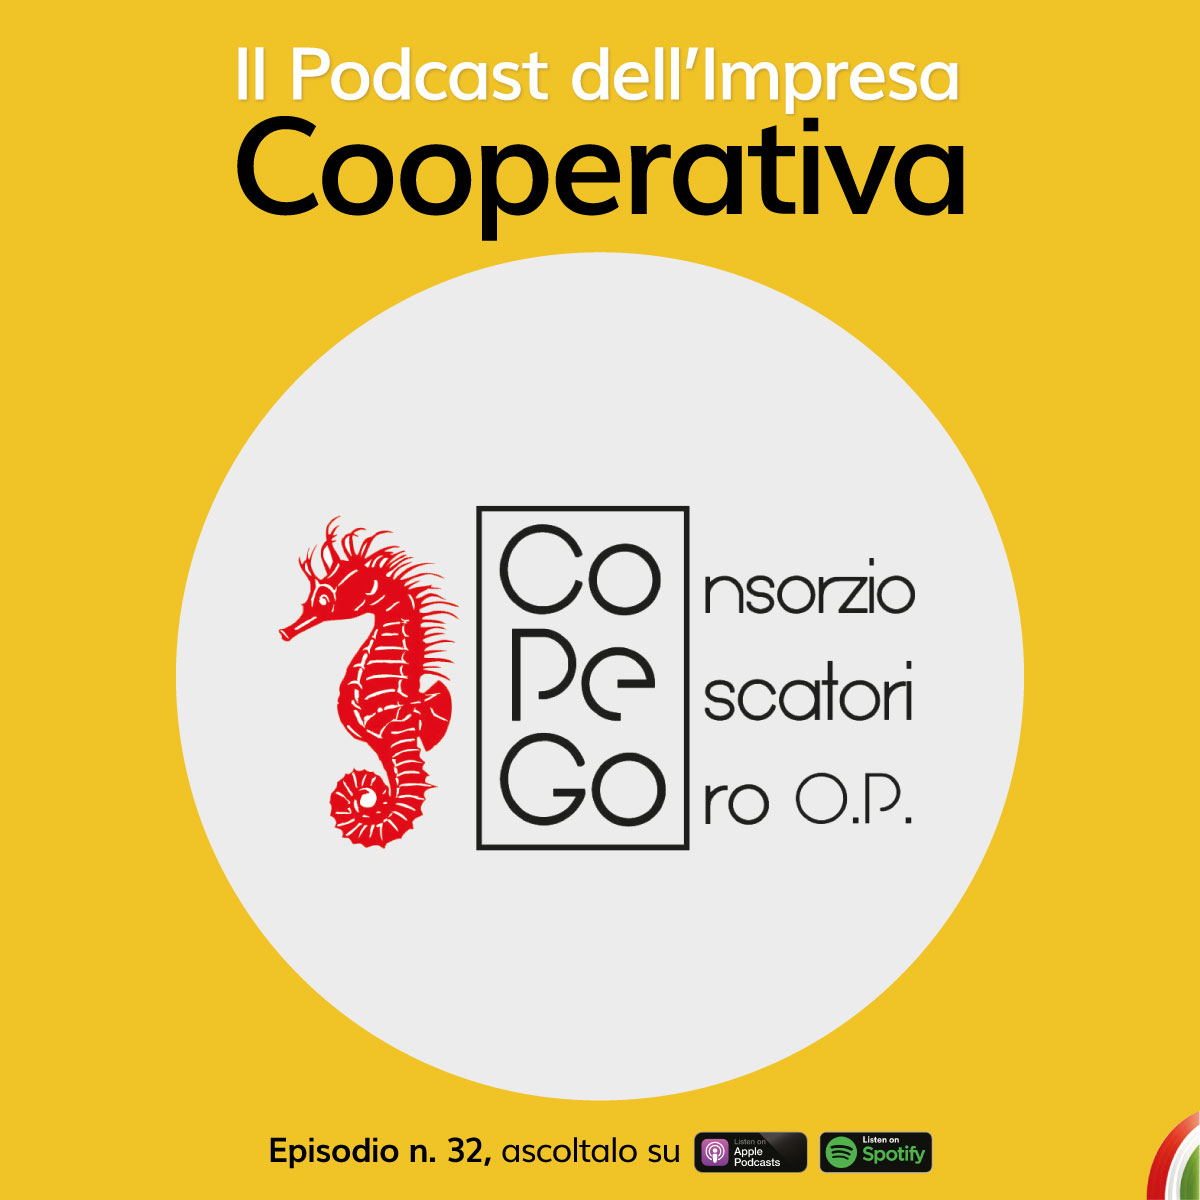 Consorzio Pescatori di Goro: online il nuovo episodio del Podcast dell’Impresa Cooperativa